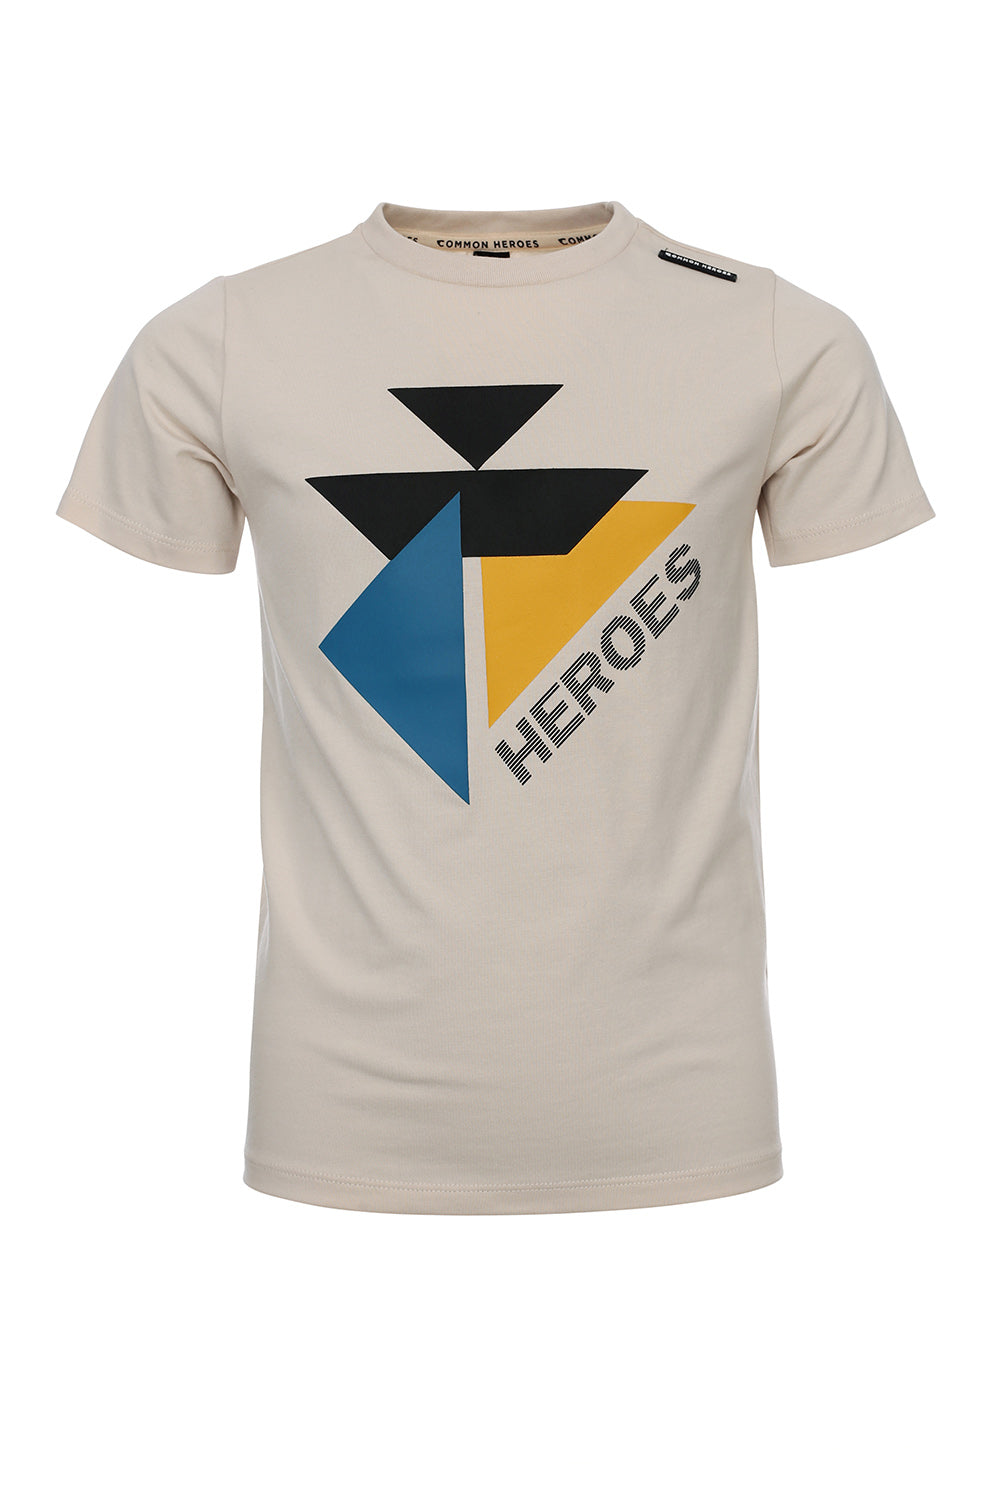 Jongens T-Shirt van Common Heroes in de kleur bone in maat 158-164.